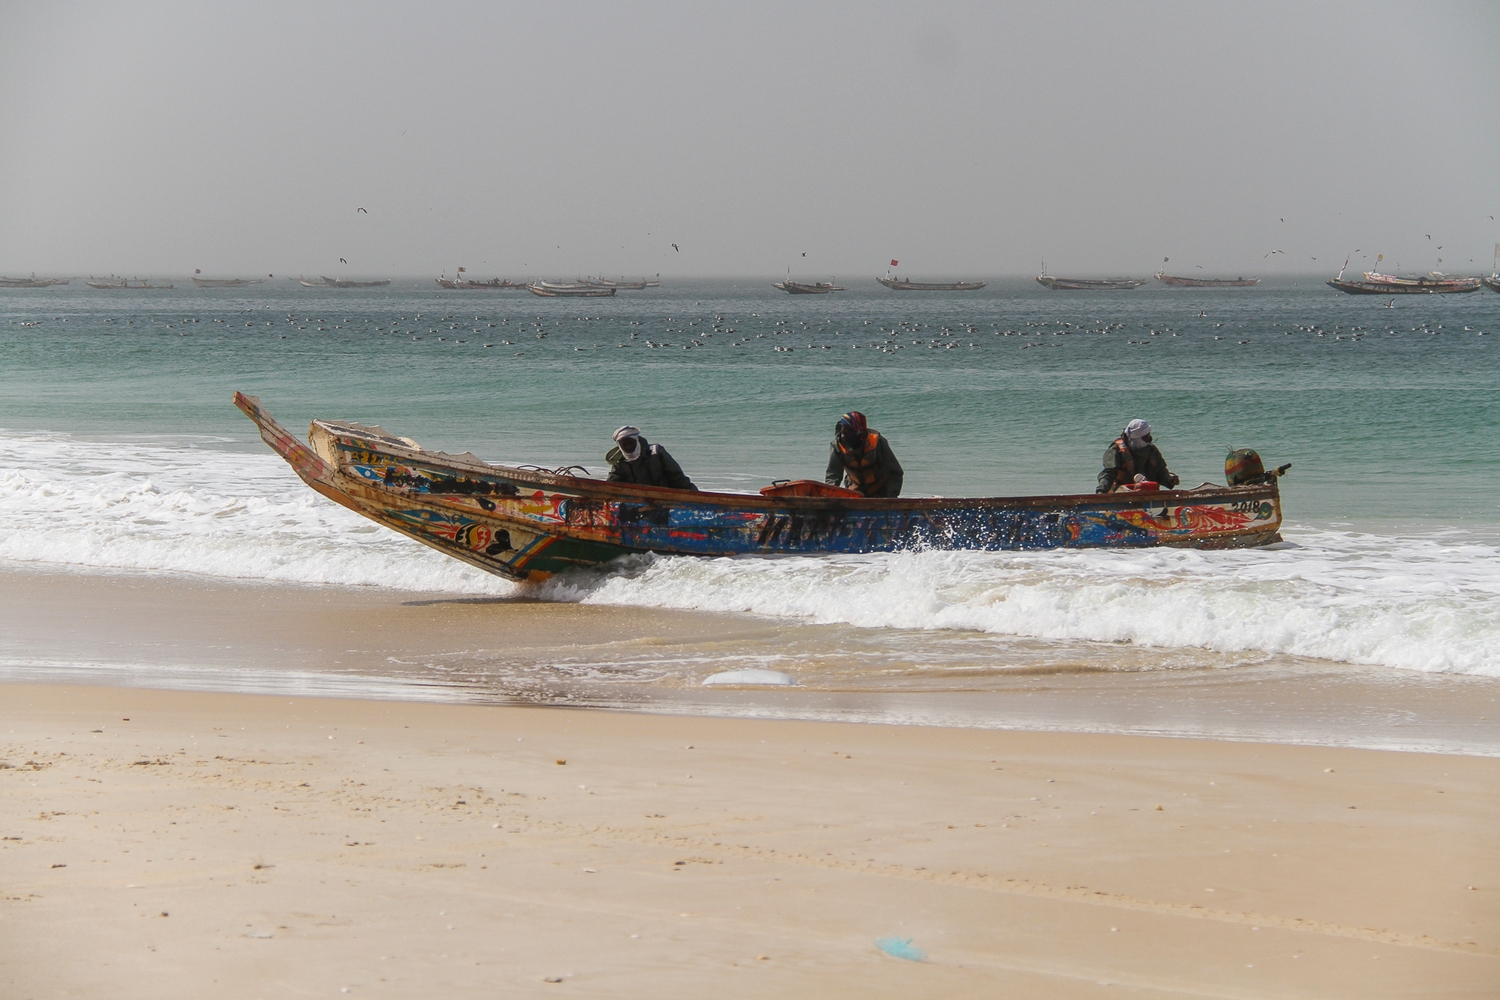 Port de Pêche in Nouakchott